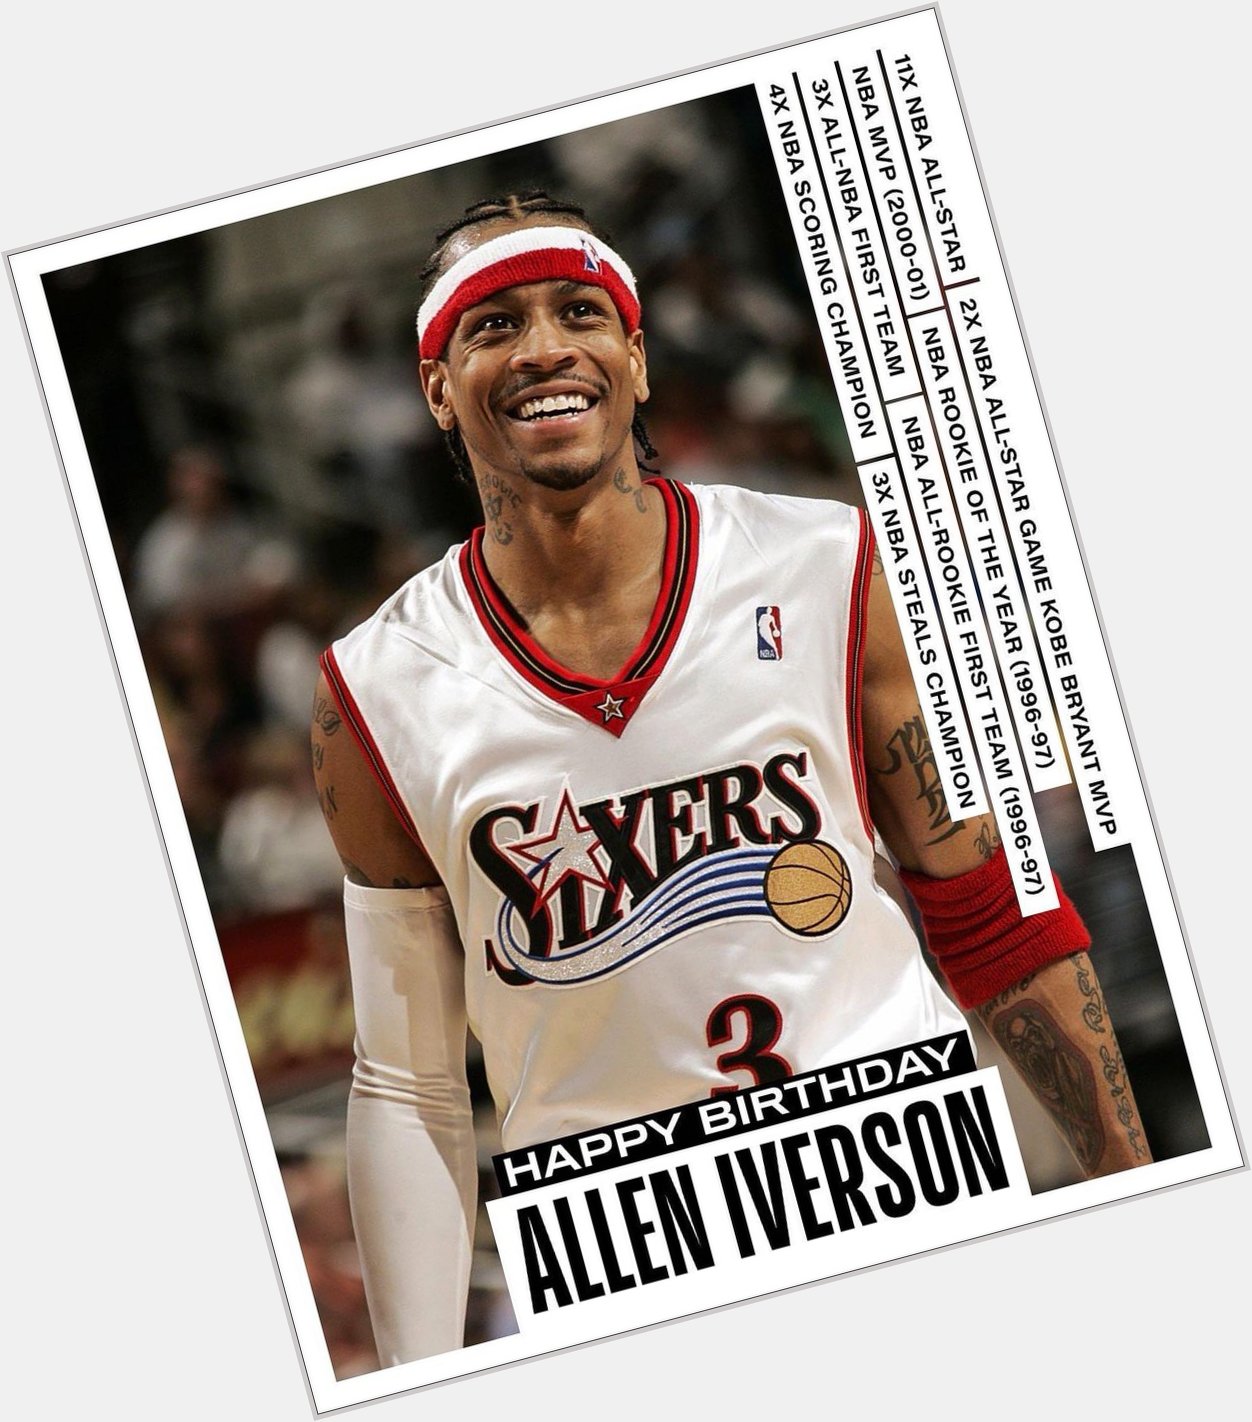 Happy Birthday Allen Iverson! 